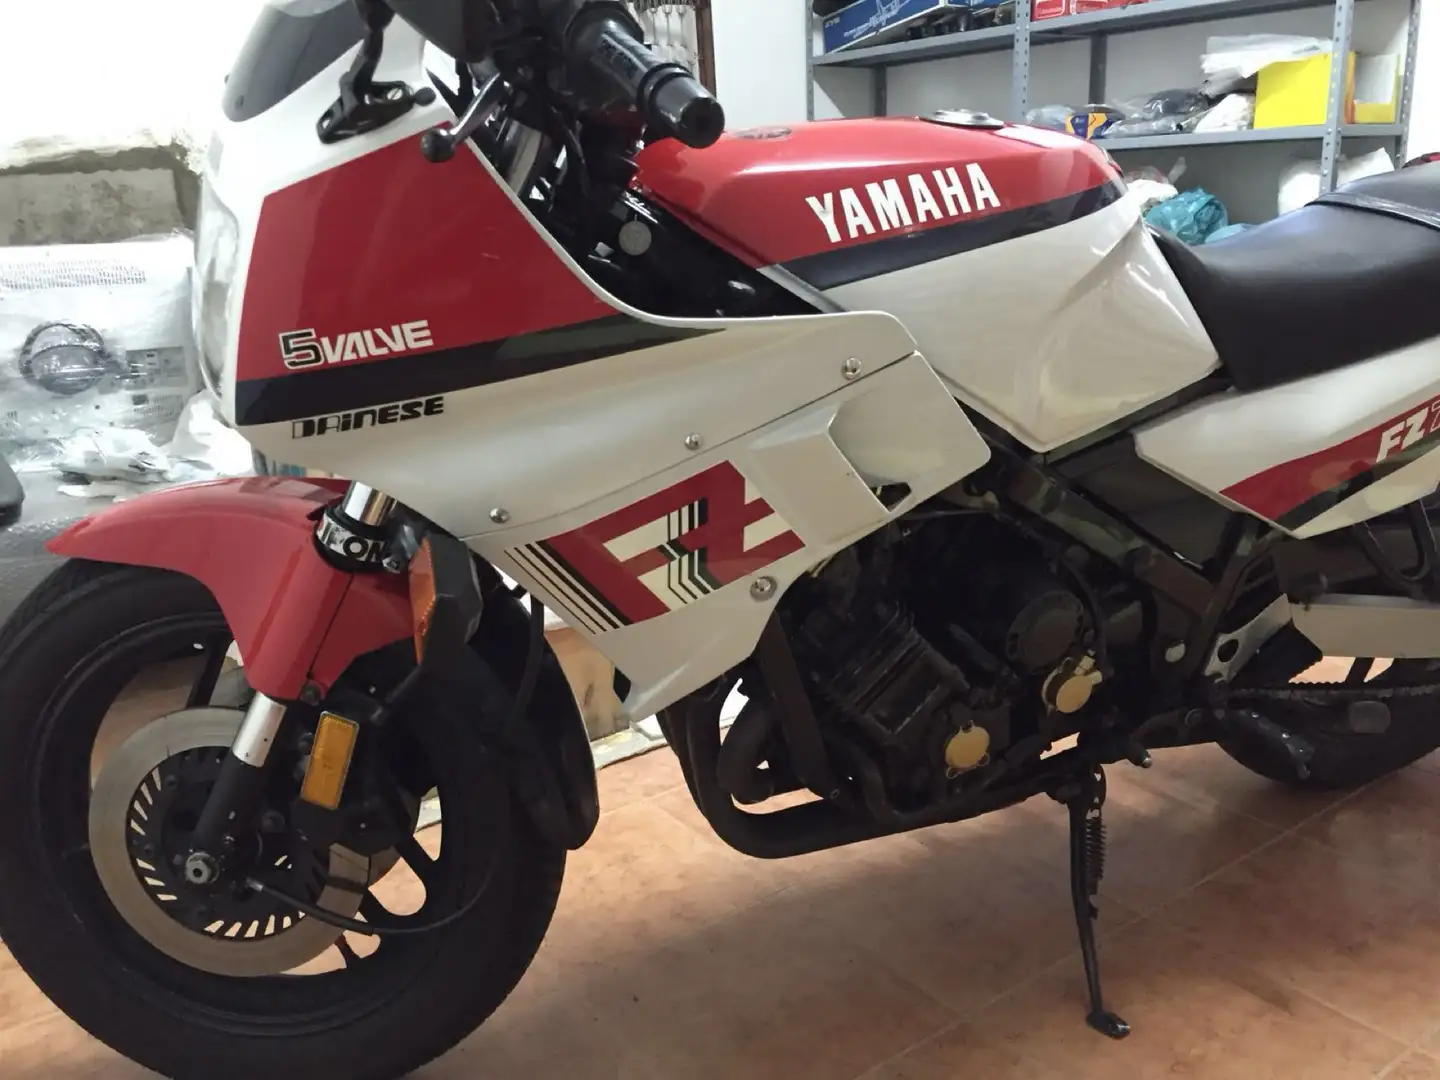 Yamaha FZ 750 immatricolazione canada colorazione bianca rossa White - 1